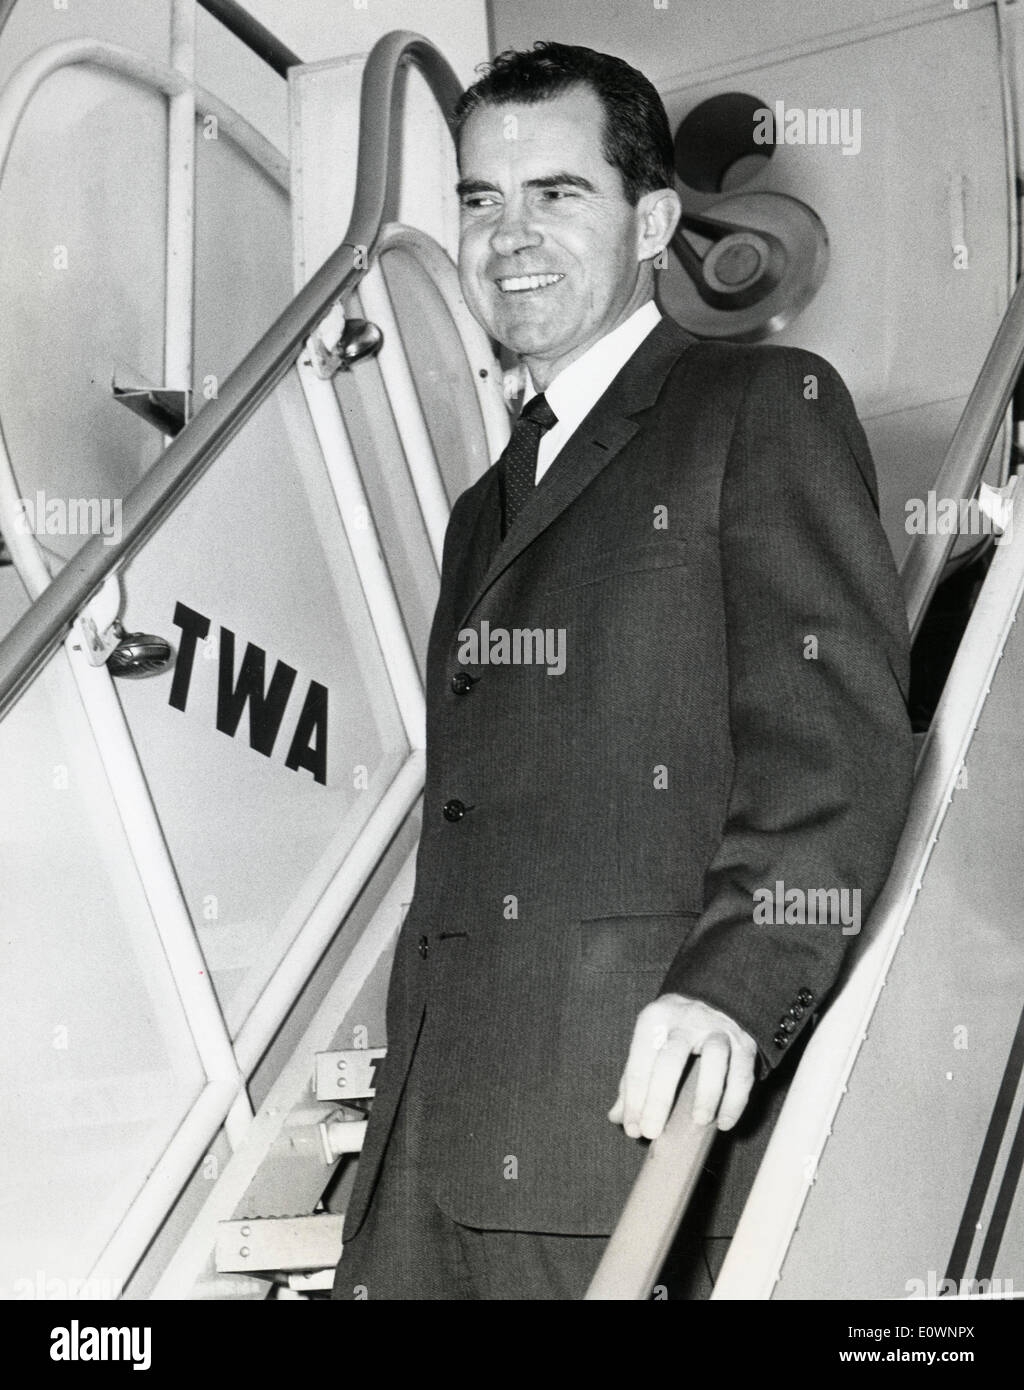 17 ott 1963 - Londra, Inghilterra, Regno Unito - Richard Nixon Gennaio 9, 1913 Ð 22 aprile 1994 è stato il trentasettesimo presidente del Foto Stock